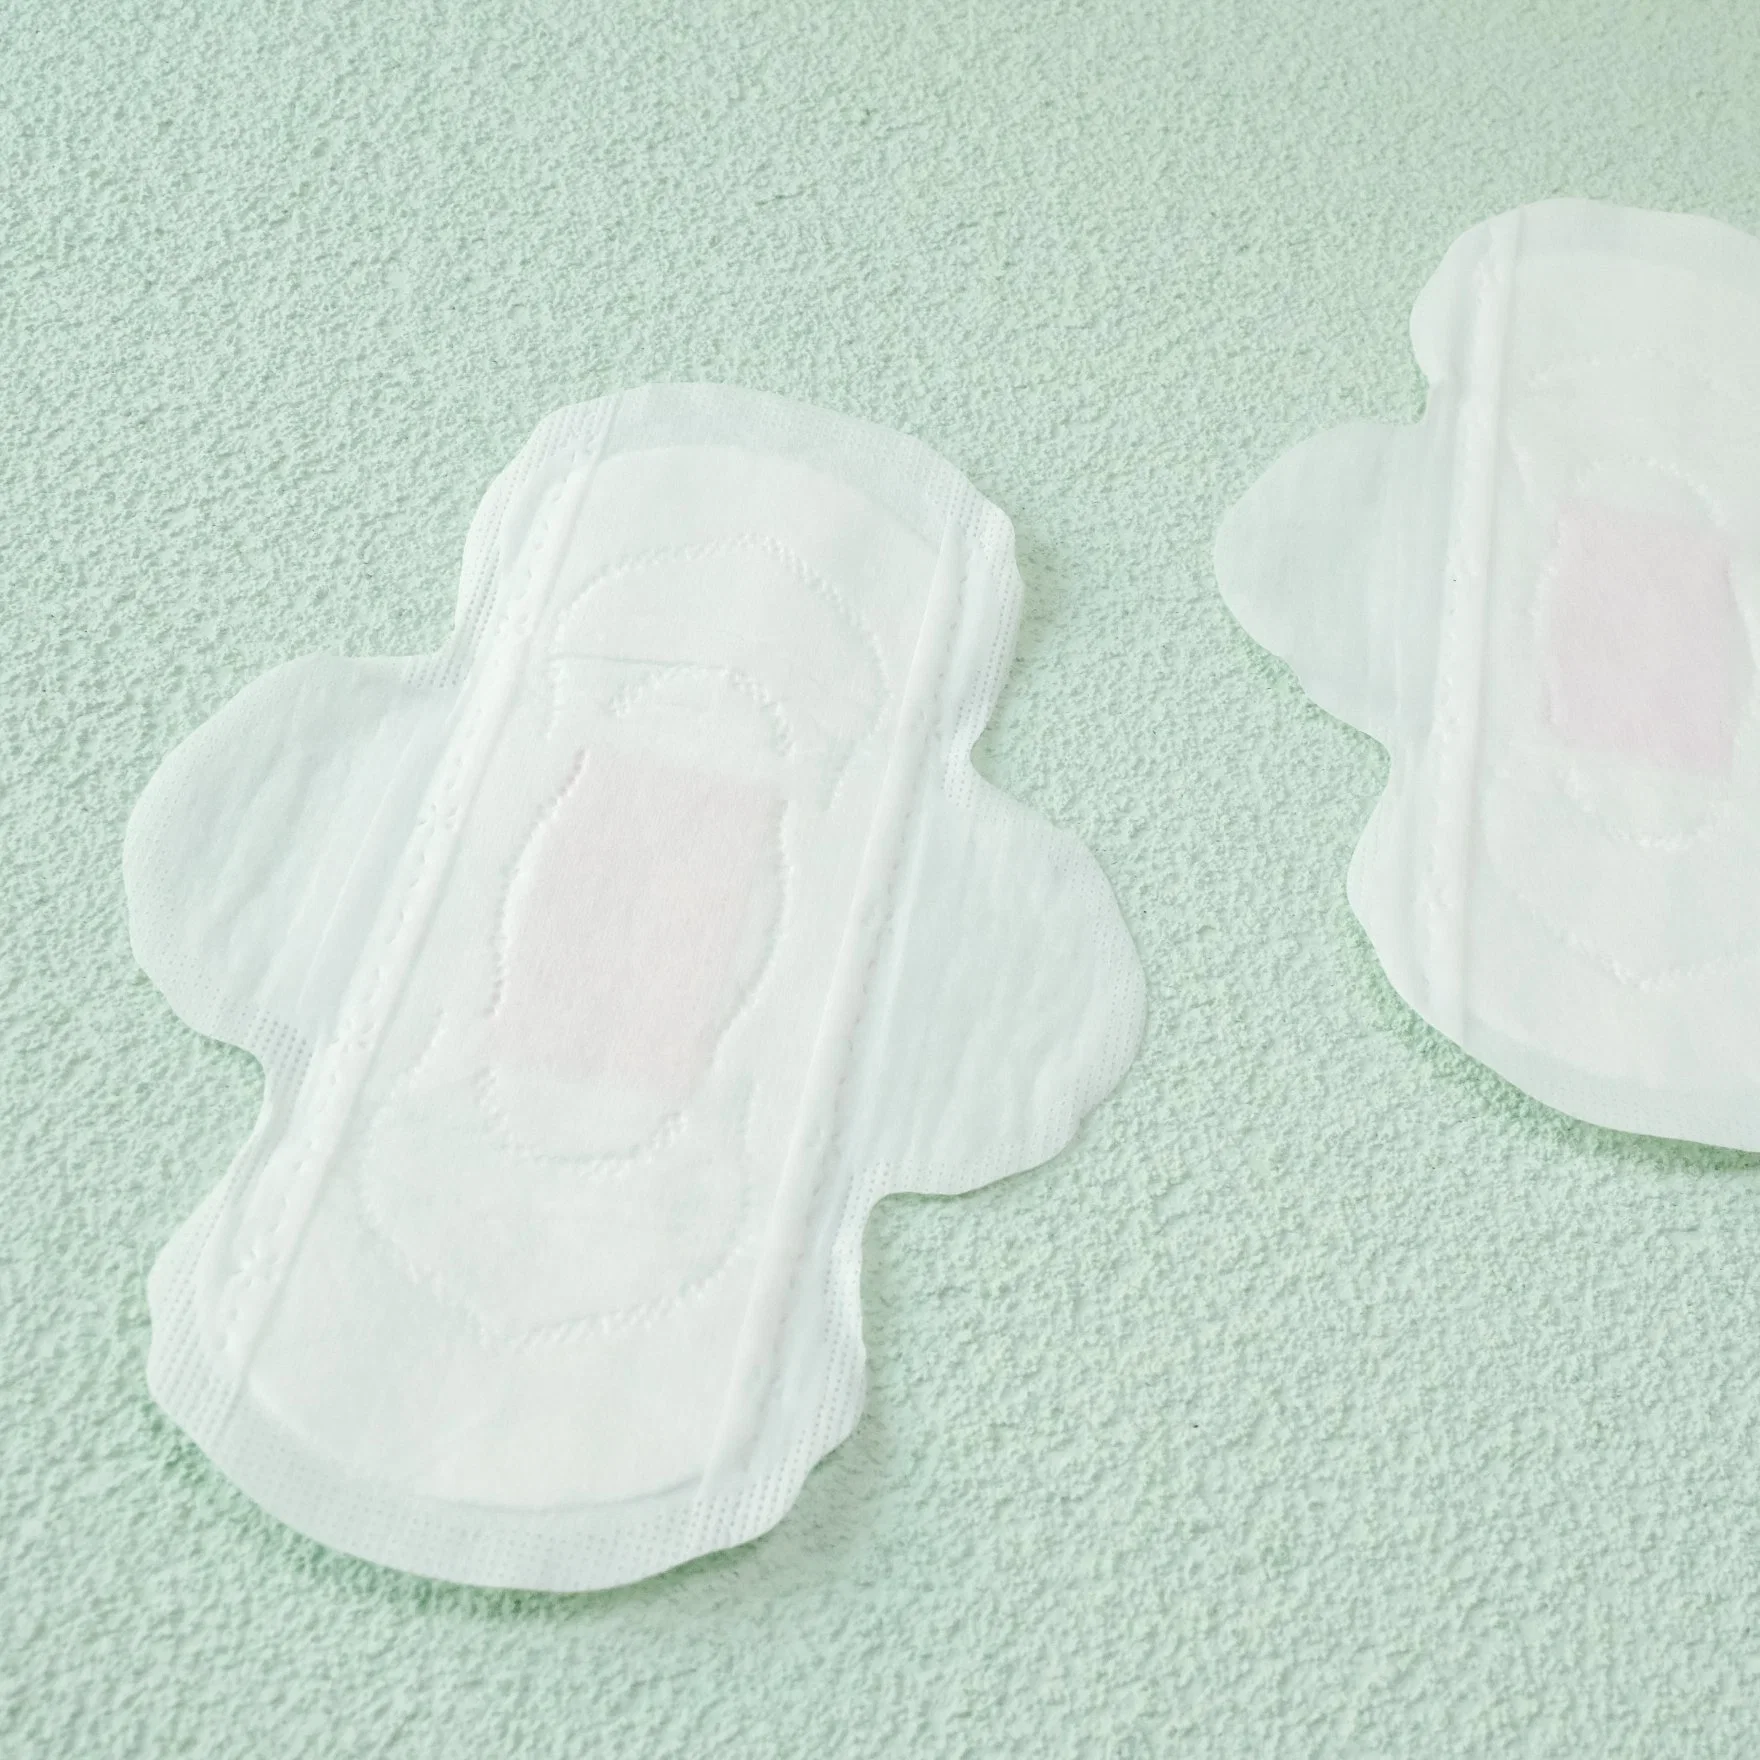 Premium absorventes higiênicos 185mm Lady Medidas Sanitárias Meias Lienr proteger todo o dia e noite